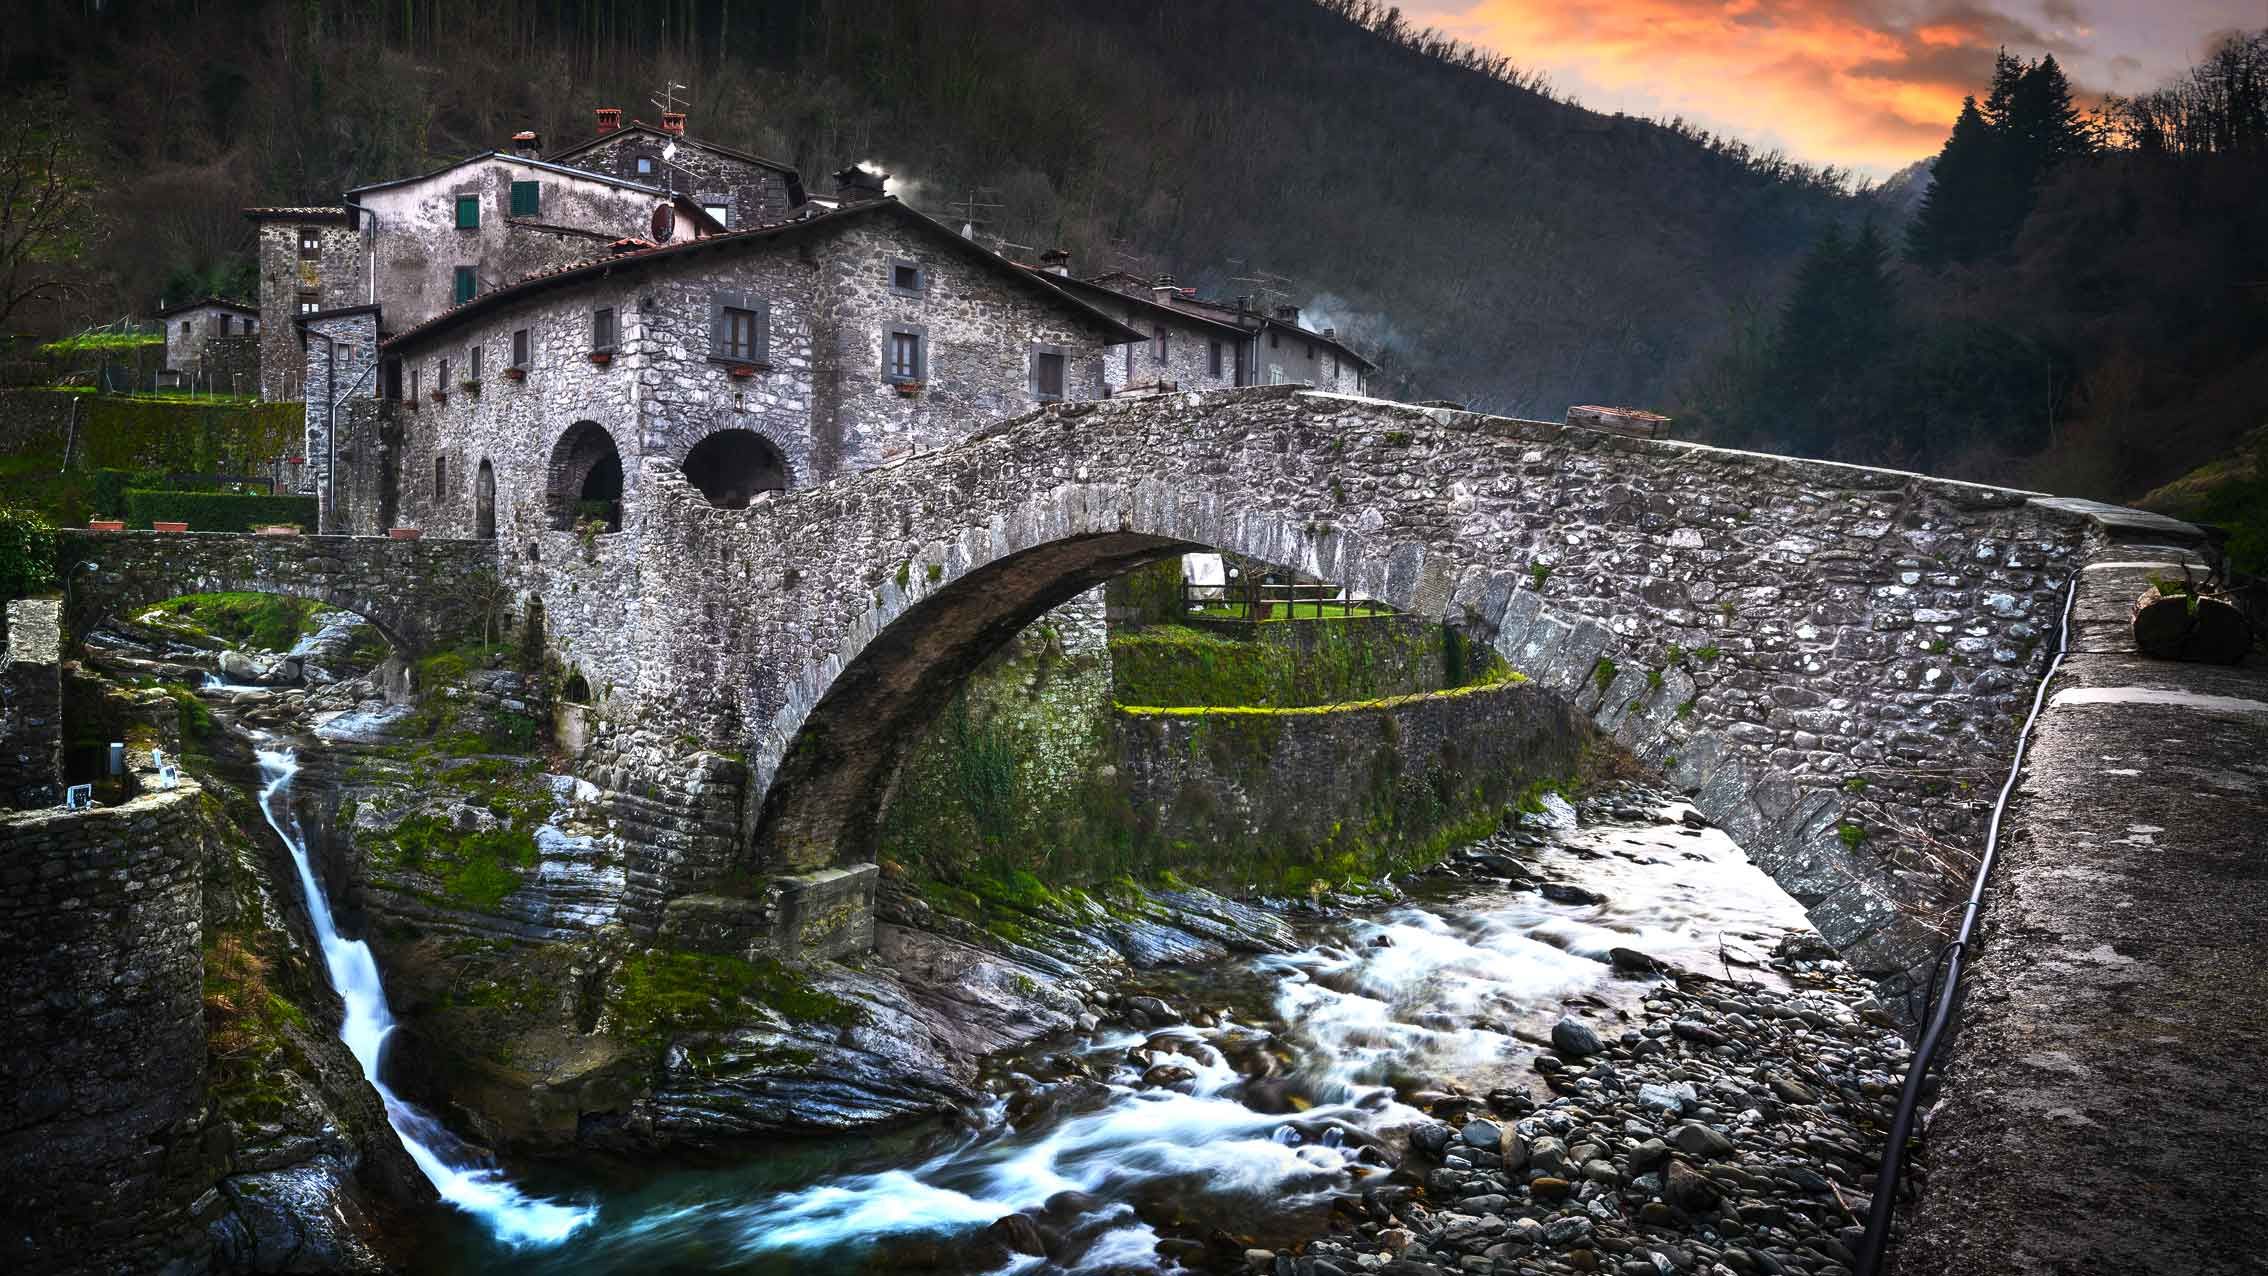 fabbriche-di-vallico-village-and-old-bridge